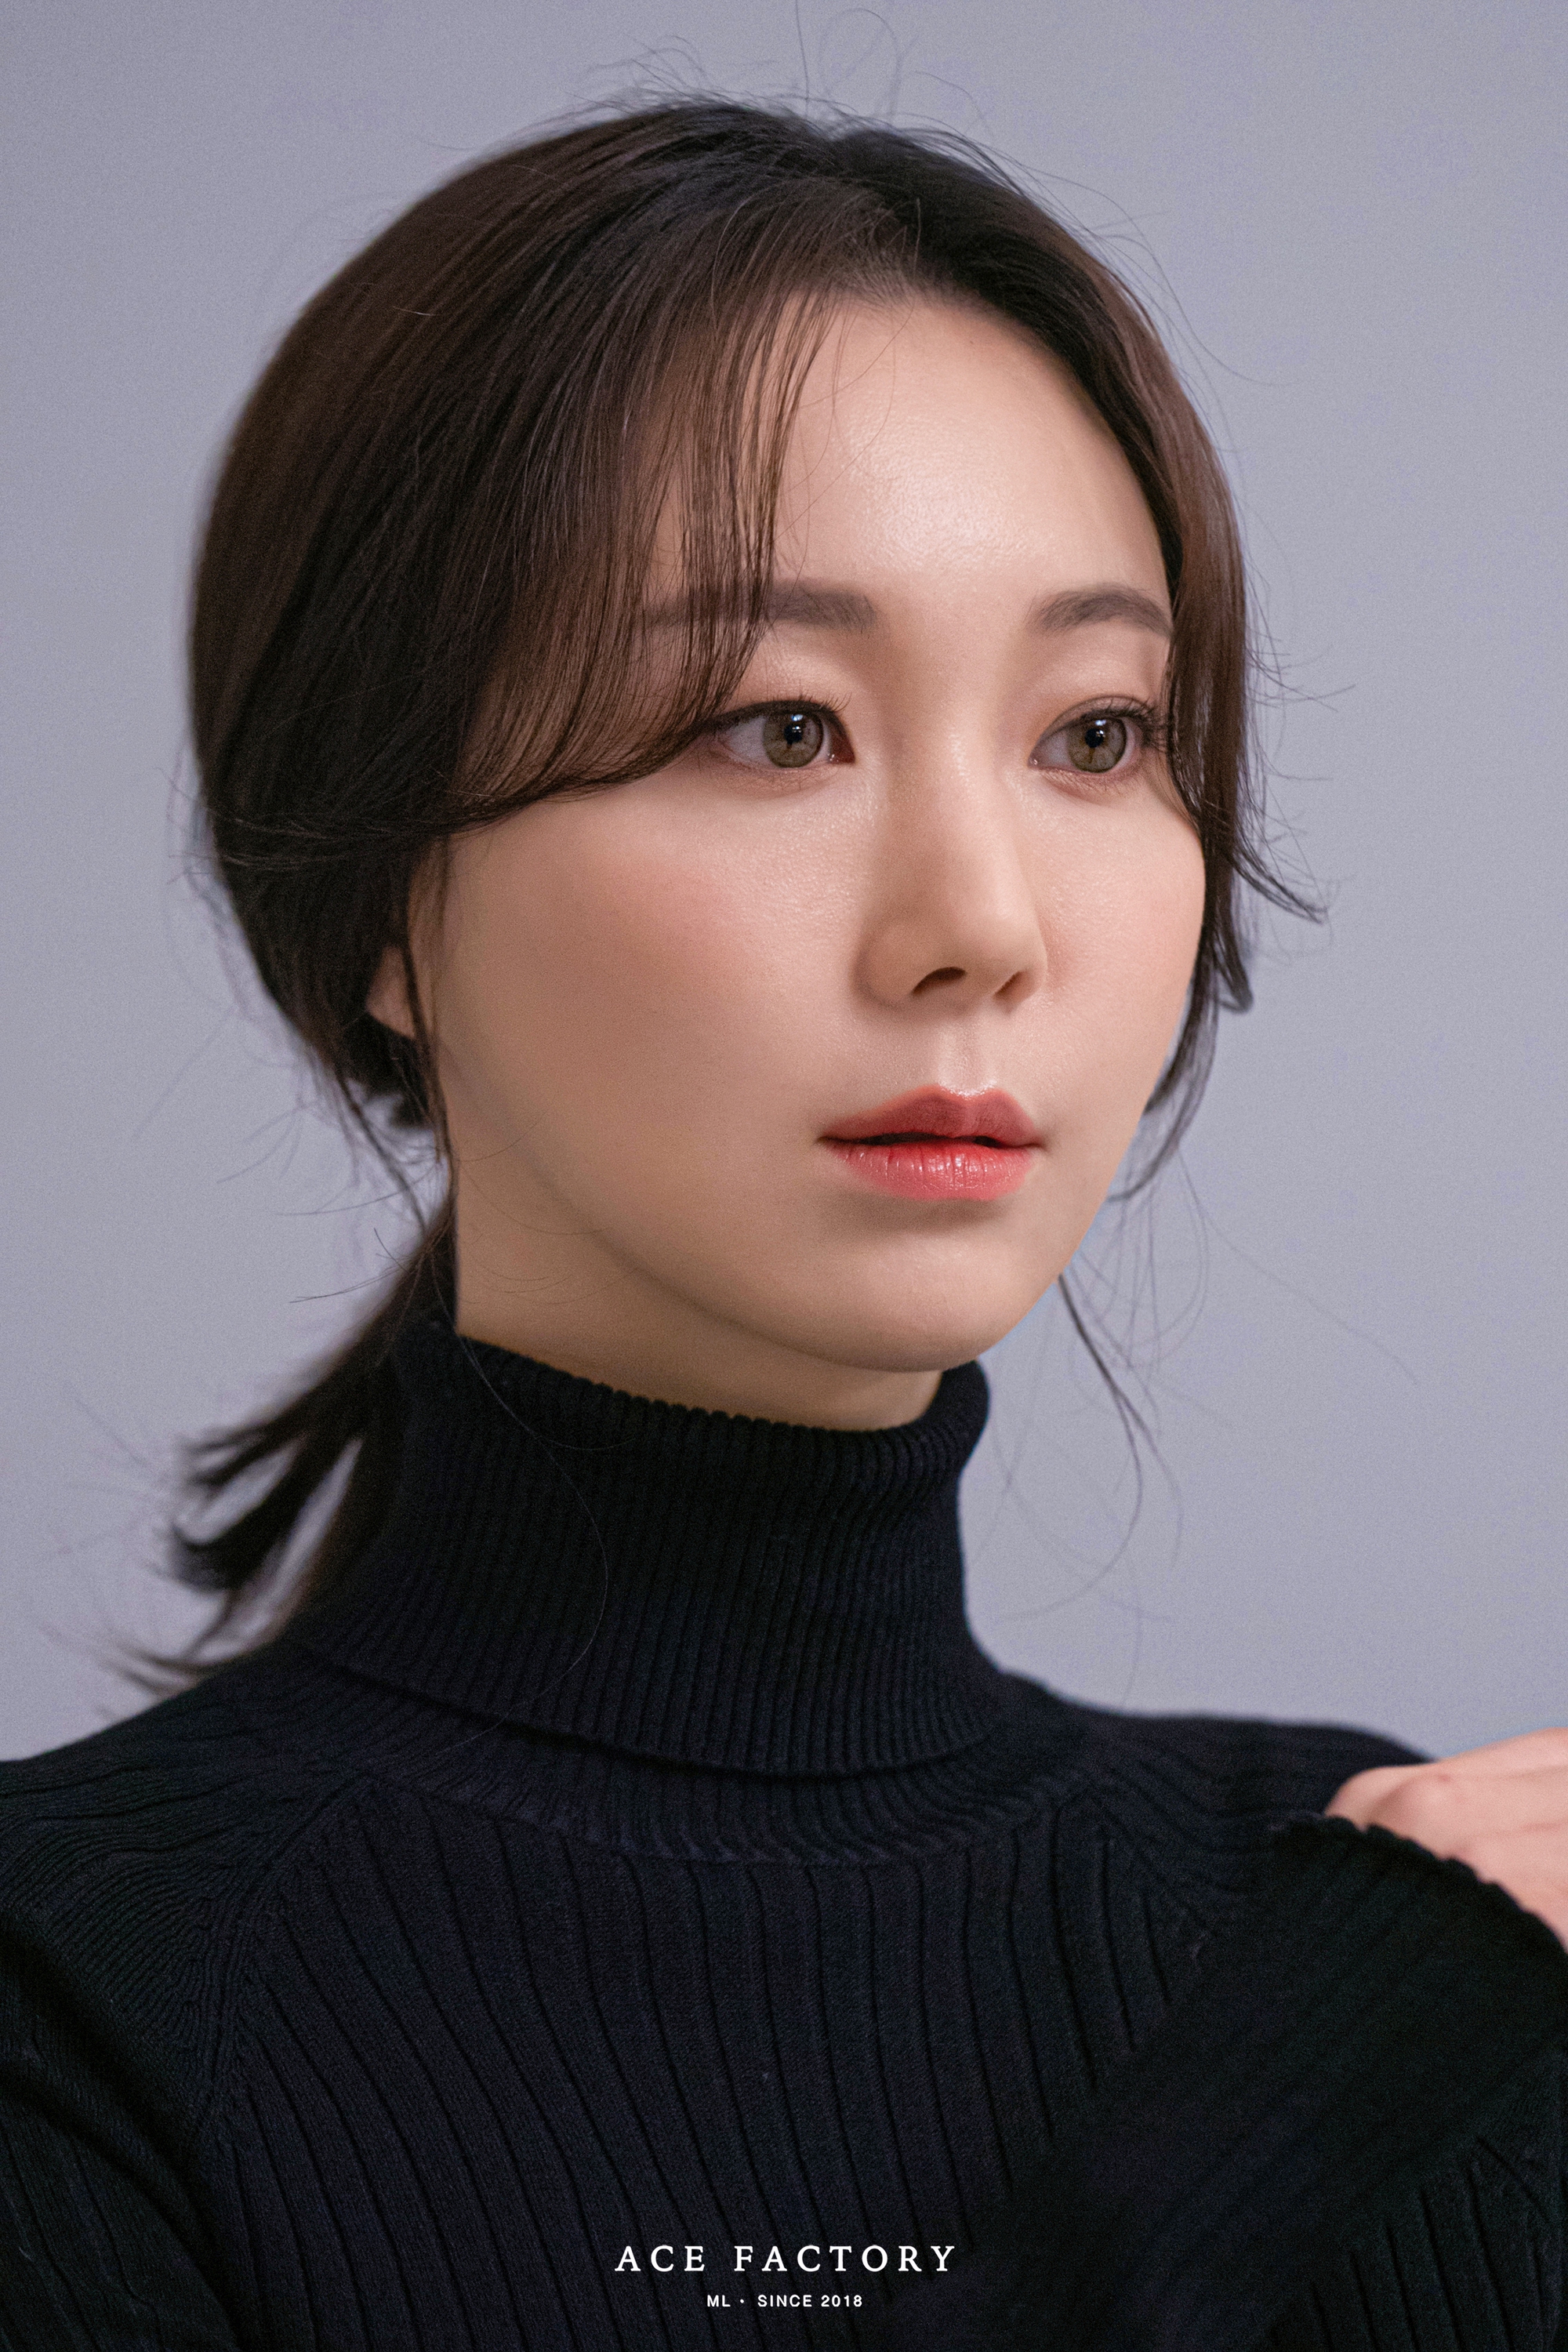 5 mỹ nhân phim Hàn có đôi mắt đẹp lạ: Lee Young Ae xứng tầm báu vật, số 2 được ví như thiên thần - Ảnh 11.